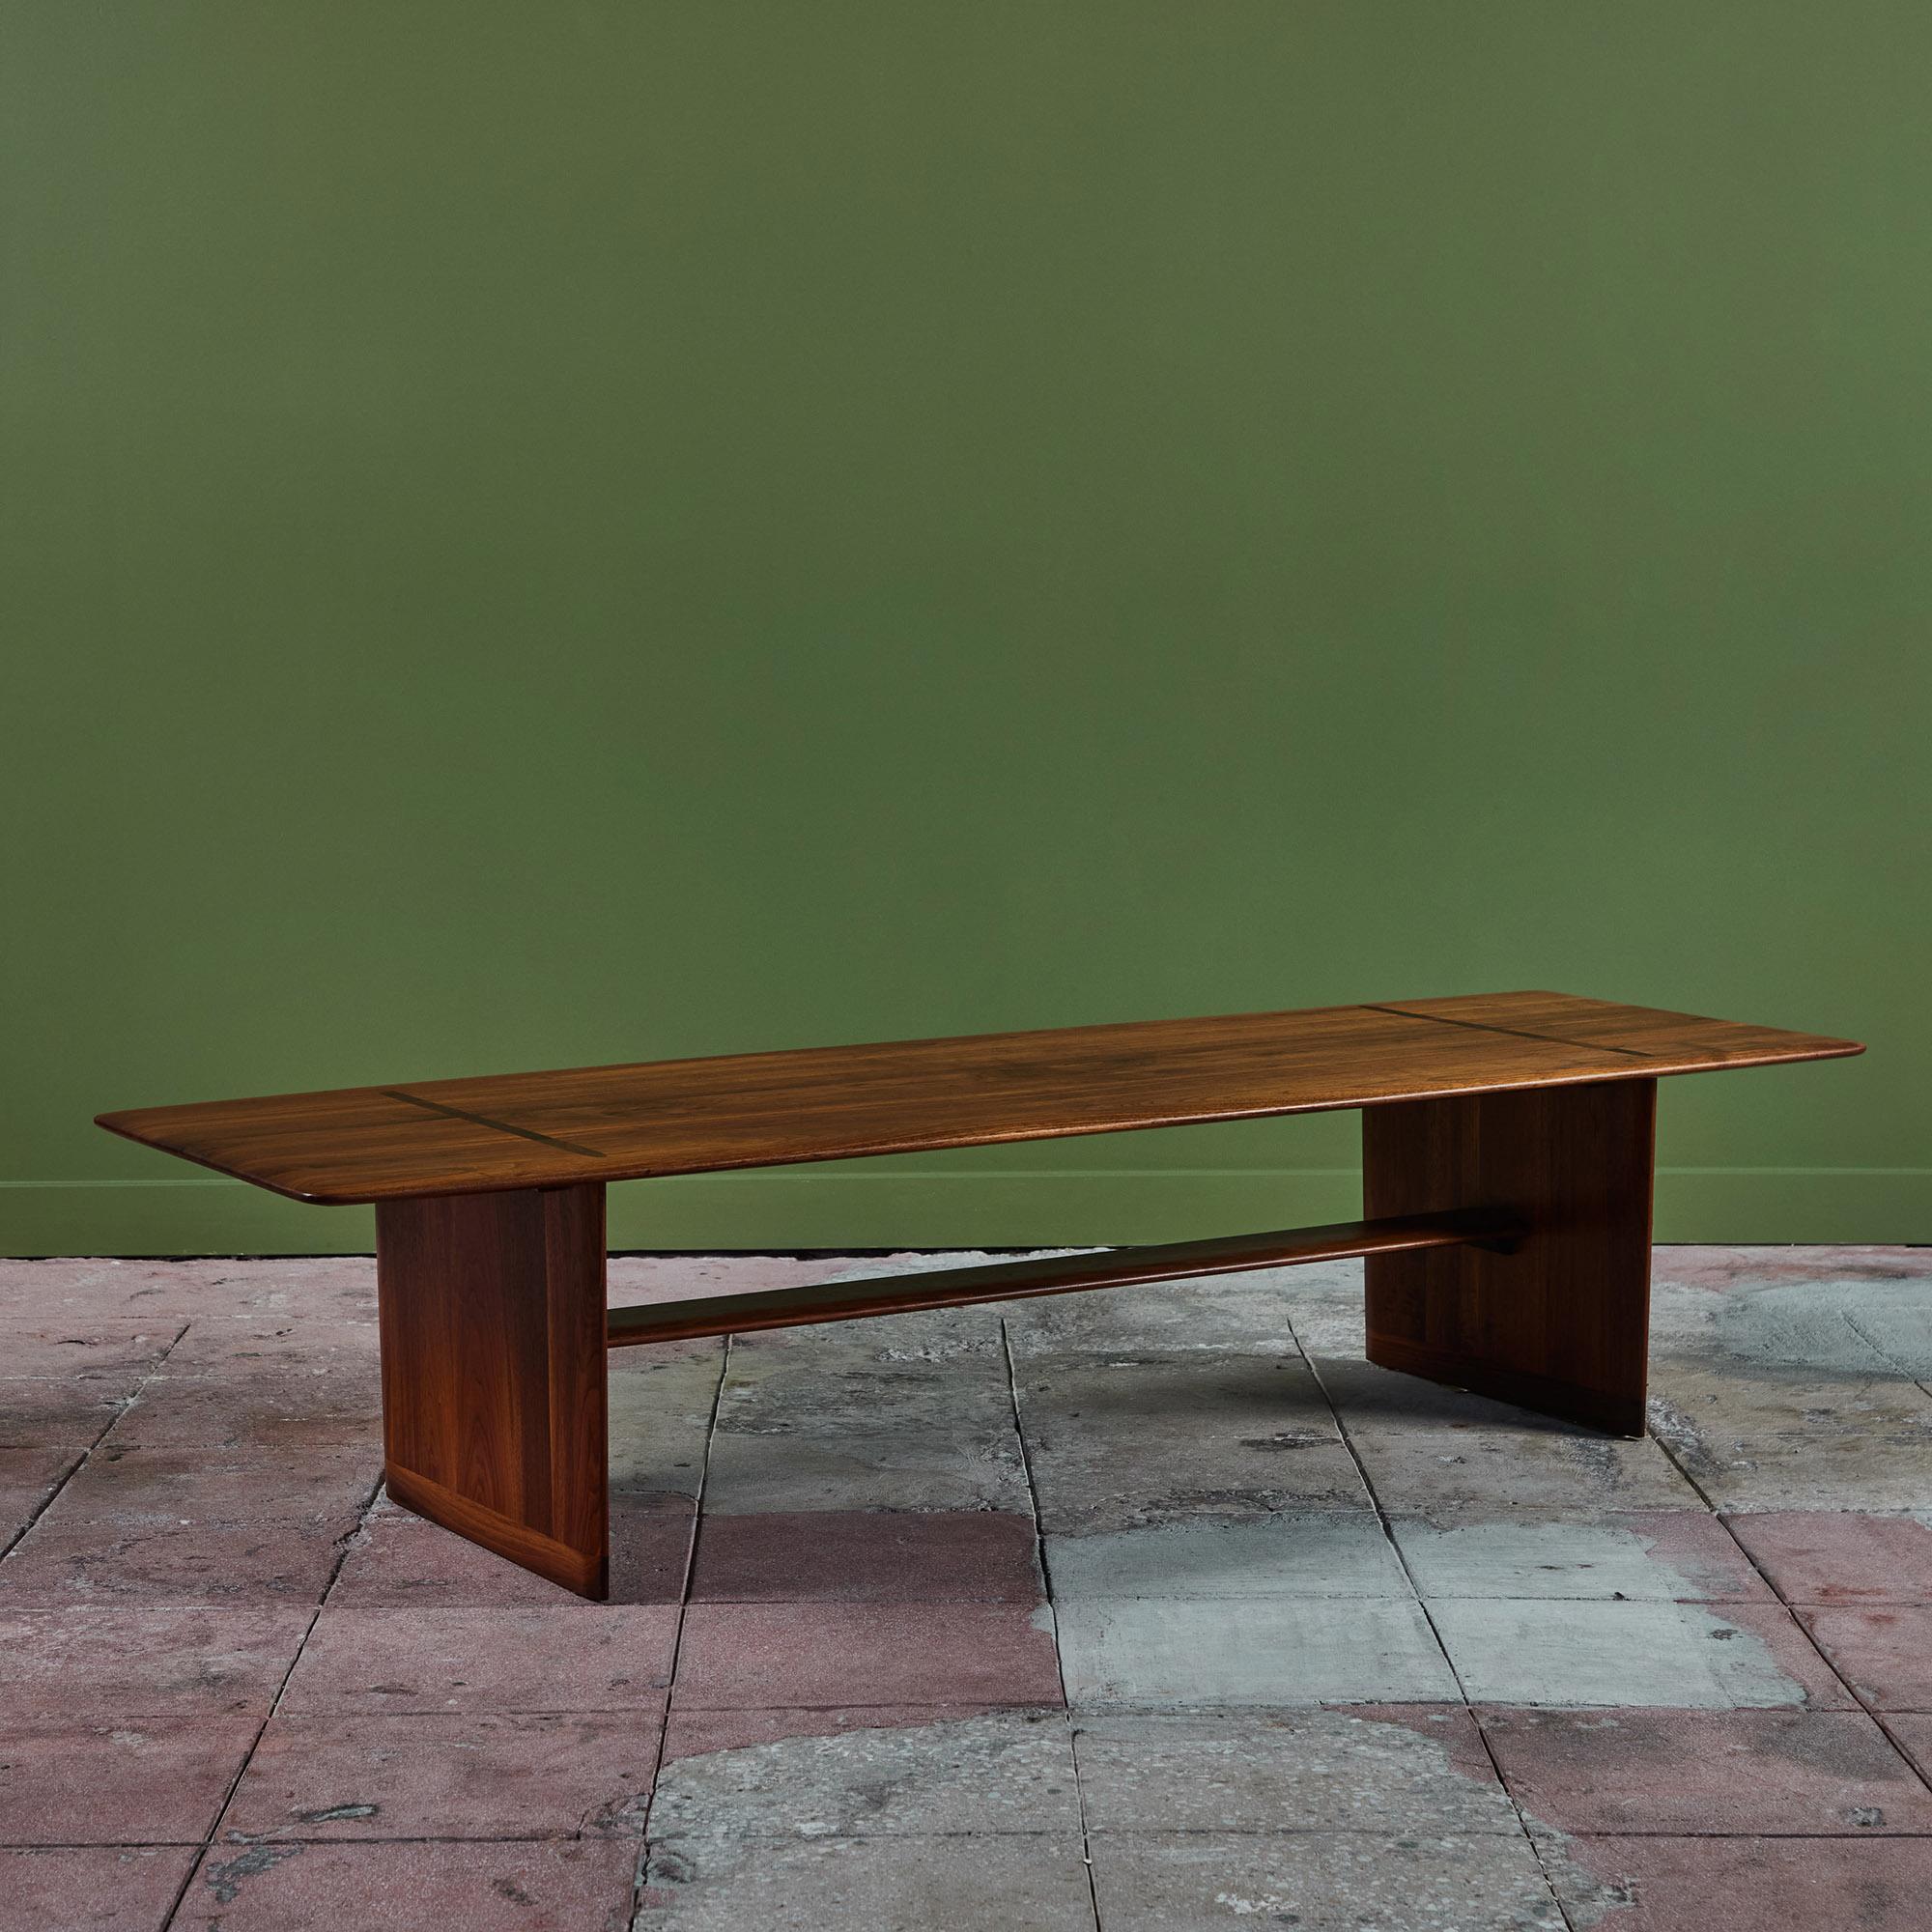 Brauner rechteckiger Saltman Couchtisch, ca. 1950er Jahre, USA. Der Tisch hat eine Tischplatte aus Walnussholz mit einer schönen sichtbaren Tischlerarbeit, wo die Beine auf die Platte treffen. Die Beine sind durch eine lange Streckbank